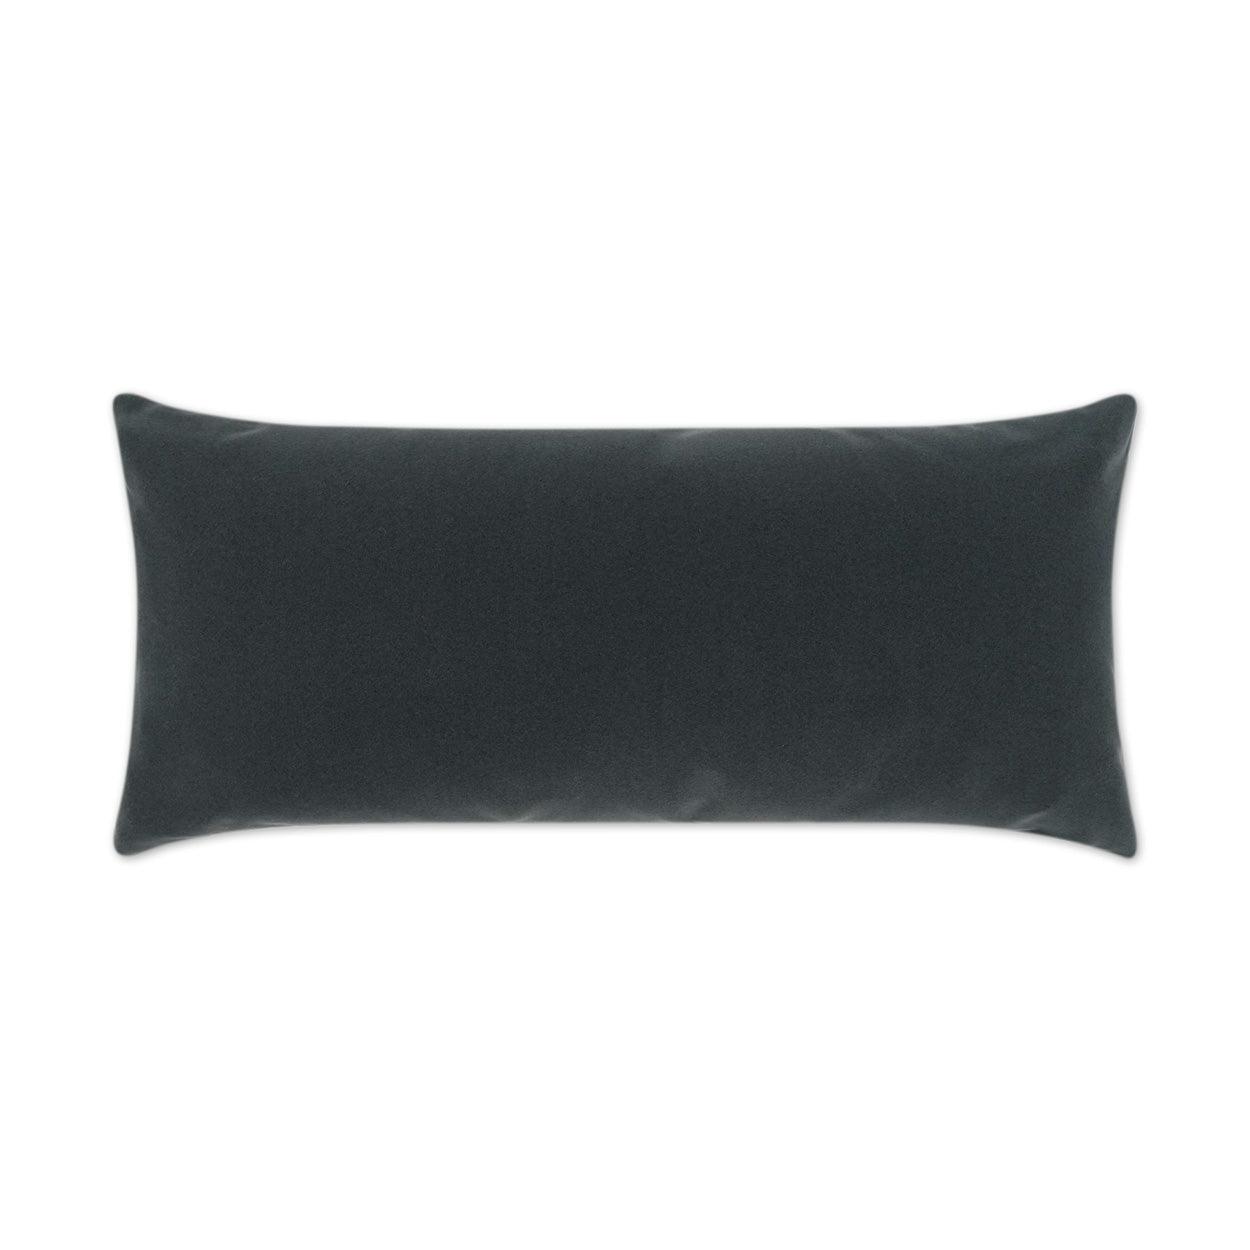 LOOMLAN Outdoor - Outdoor Sundance Lumbar Pillow - Charcoal - Outdoor Pillows